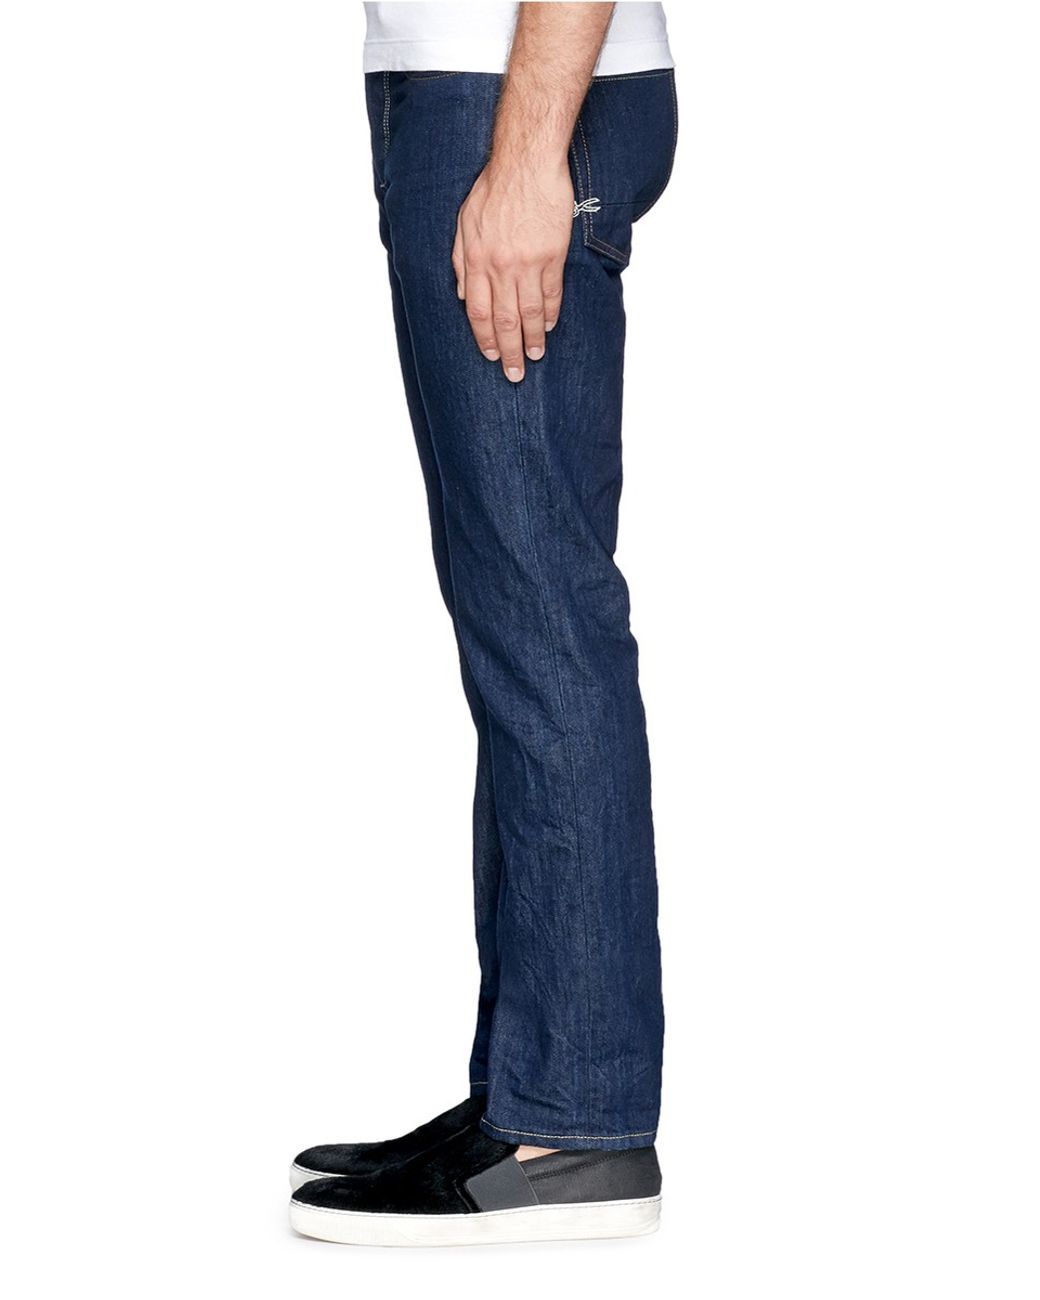 Denham Drill Fit Jeans in Blue for Men | Lyst UK